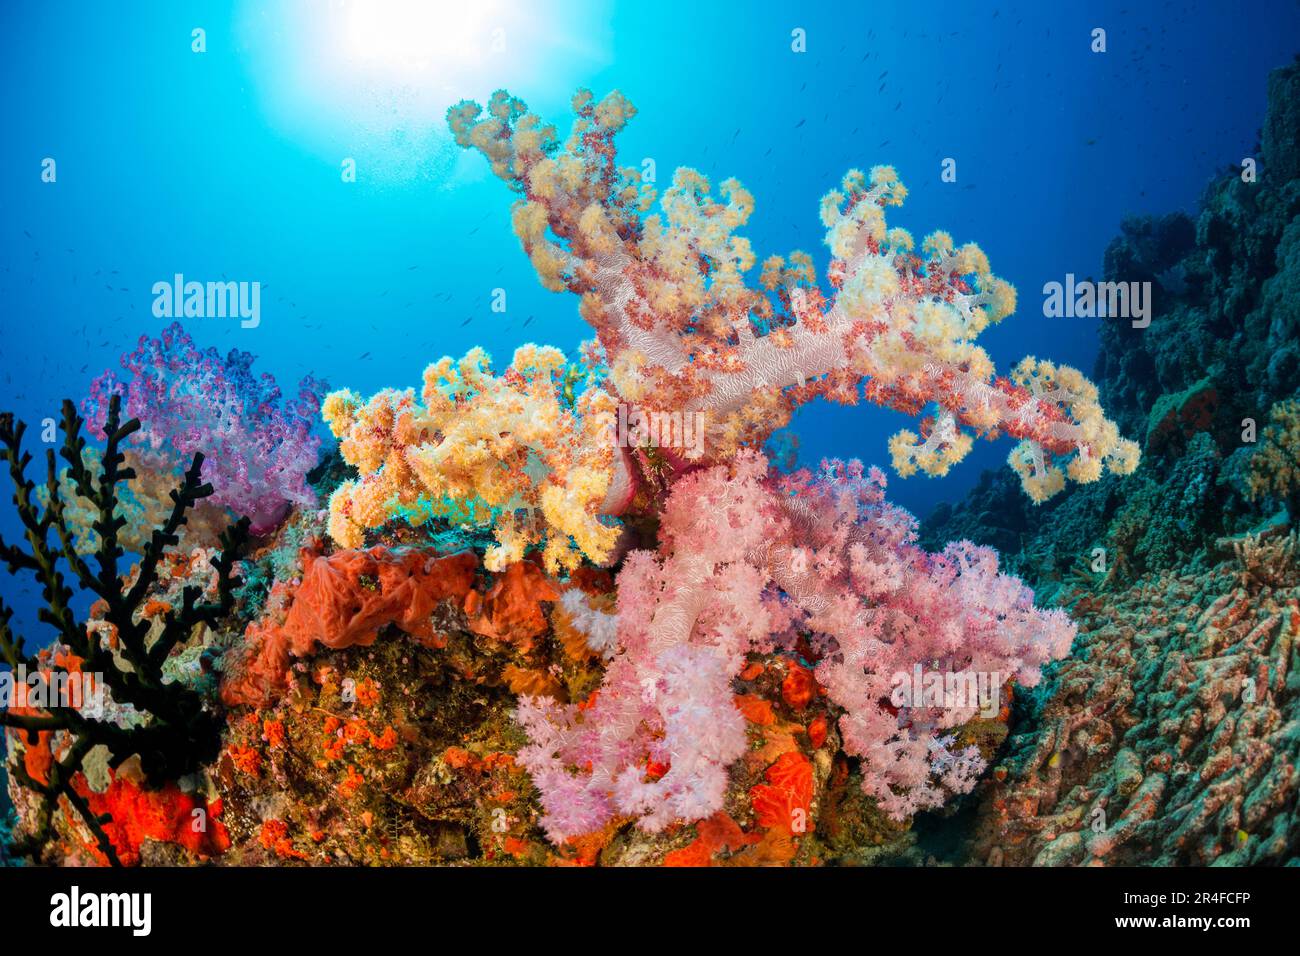 Le corail mou alcyonarien multicolore domine cette scène de récif fidjien. Banque D'Images